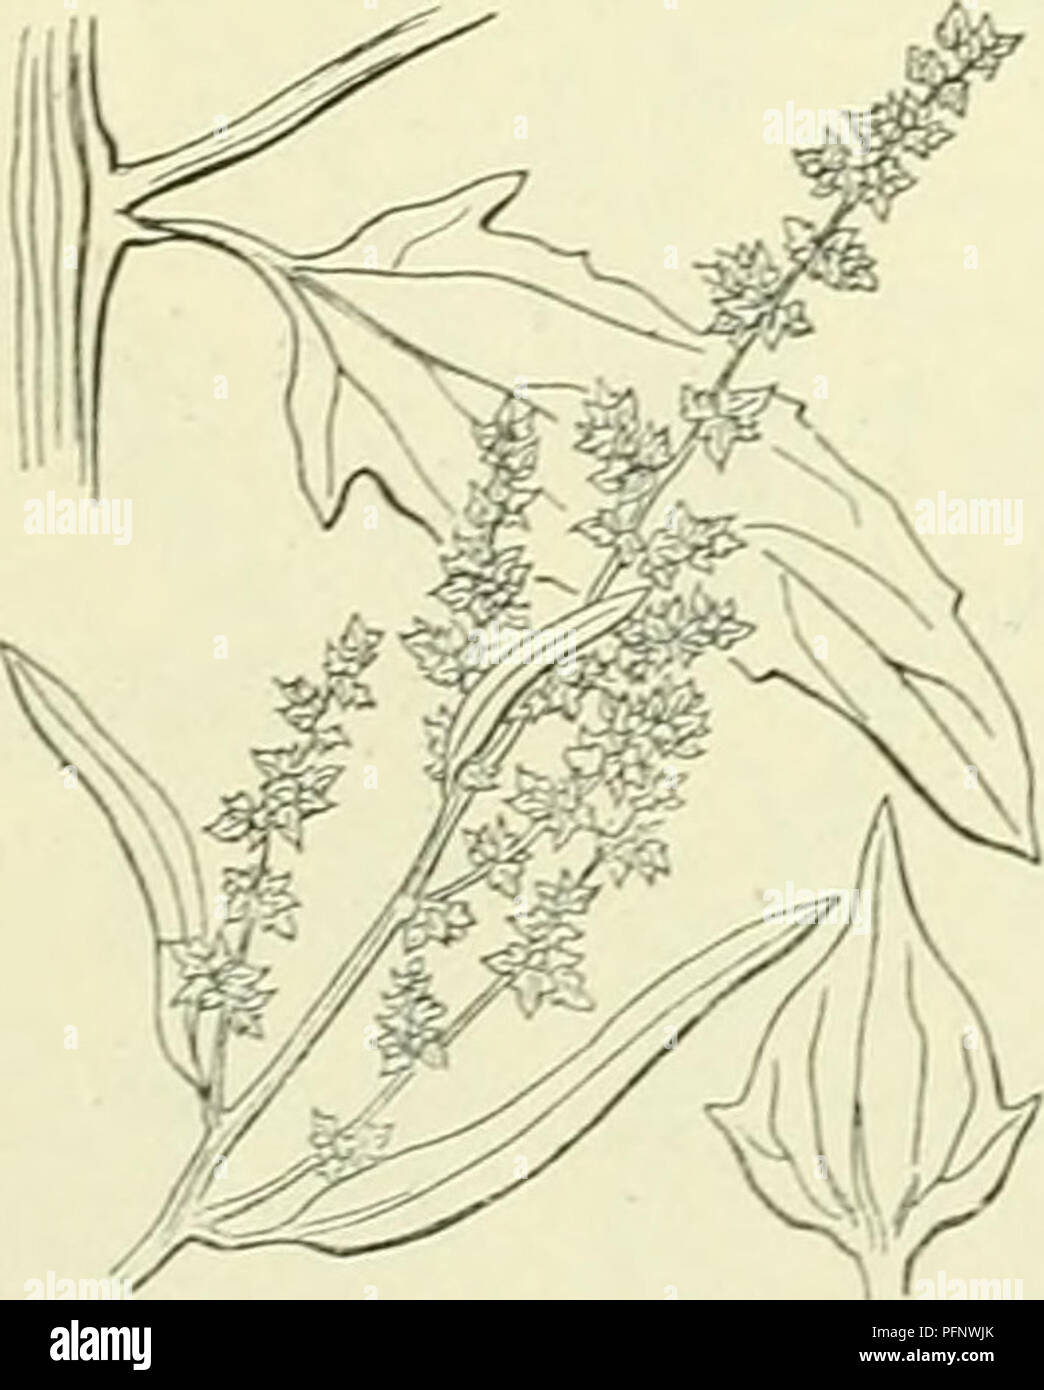 . De flora van Nederland. Les plantes. Littorale Atriplex Fig. 124. A. patulum') L (A. angustifolium ^) Sm.). Uitstaande melde (fig. 125). De plante est meelachtig bestoven groen, weinig. De stengel est recht- opstaand opstijgend, liggend d vertakt, 1990-1993, a rencontré de takken sterk, opstijgend uitgespreid de bovenste. De bladen staan verspreid zijn de tegenoverstaand weerszijden gelijk aan, van kleur van onderen grijsschilferig de. De driehoekig motorkapontgrendeling lancetvormig bladen zijn-spiesvormigen, nret voet, de bovenste lancet- tot lijn- lancetvormig gaafrandig, alle de getand iets. De bloemen vormen groena Banque D'Images